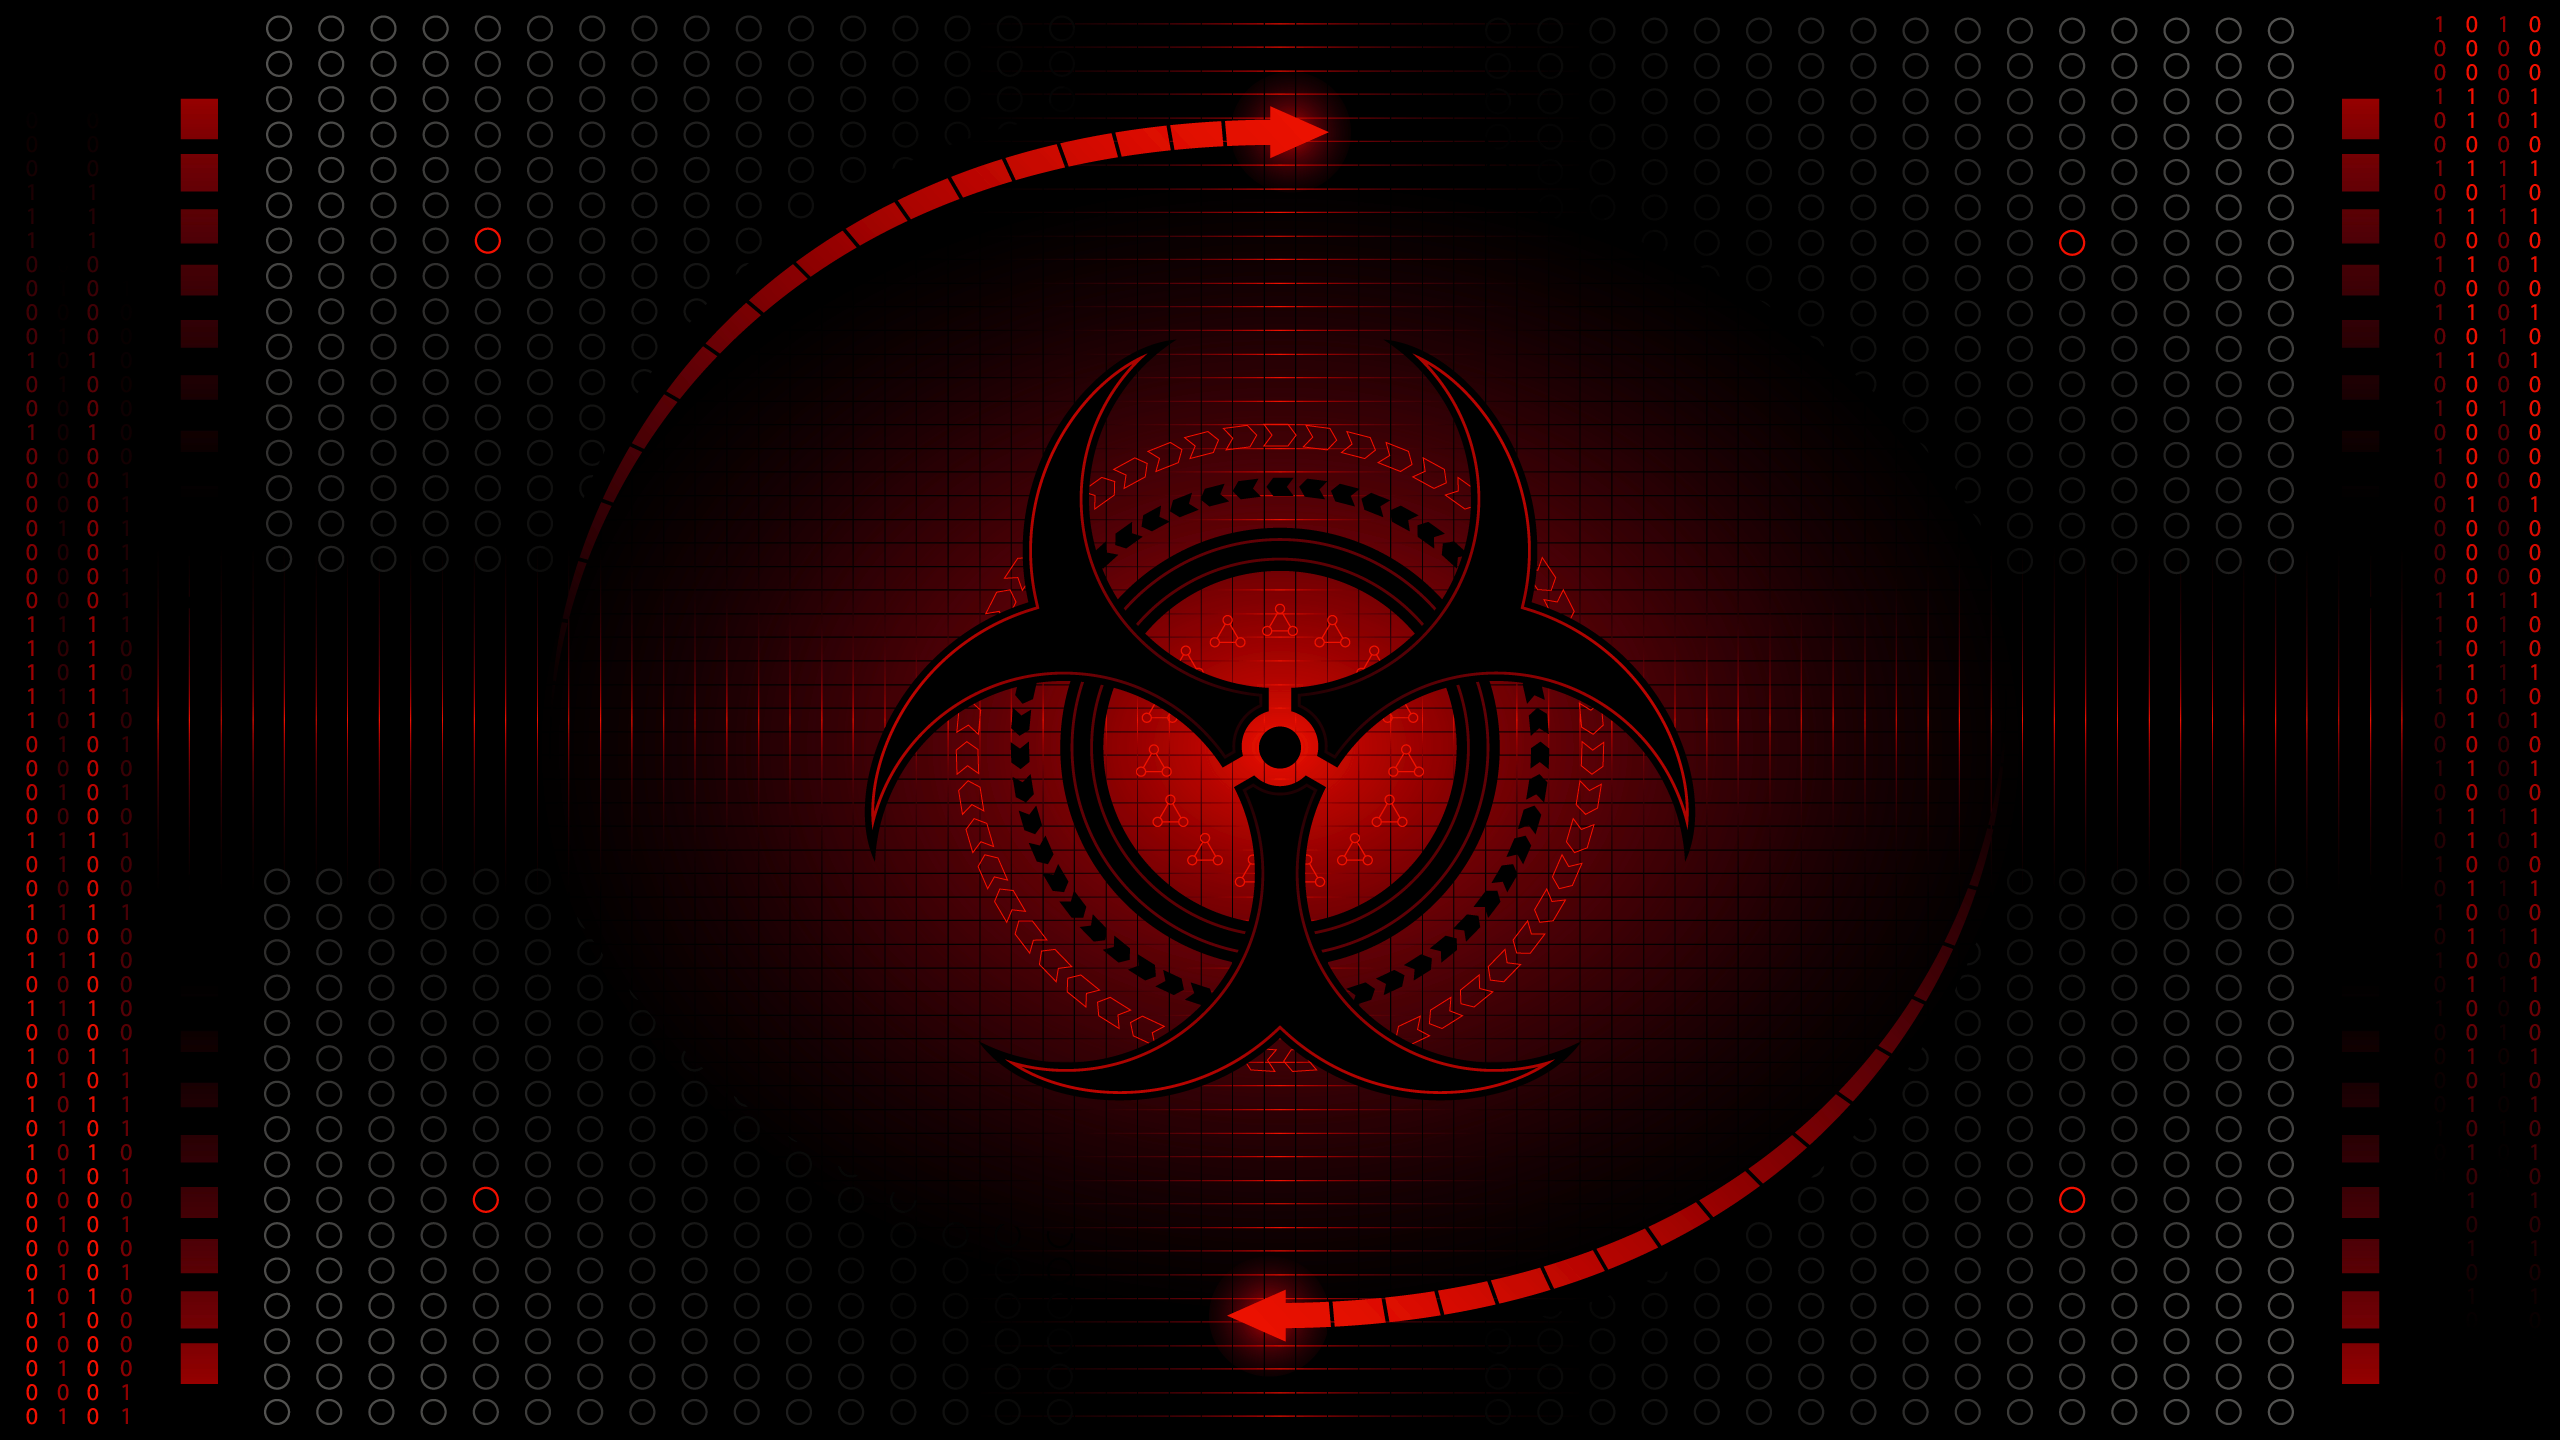 Biohazard Computer Wallpapers, Desktop Backgrounds 2560x1440 Id